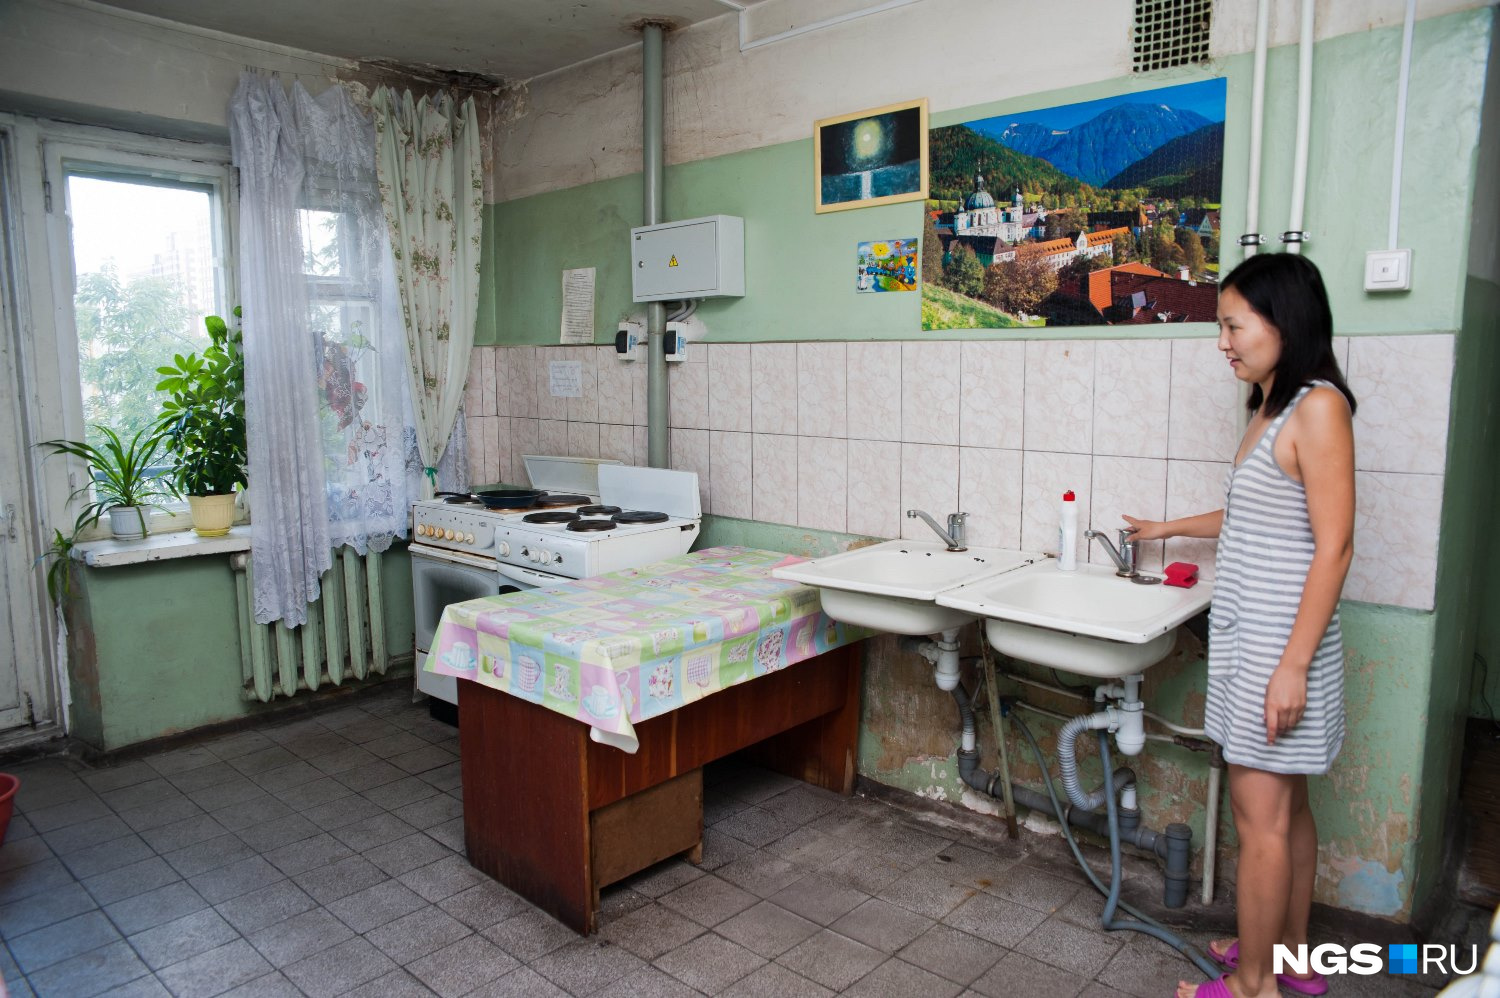 Назад в прошлое: как советские женщины жили в общежитии (Фото)